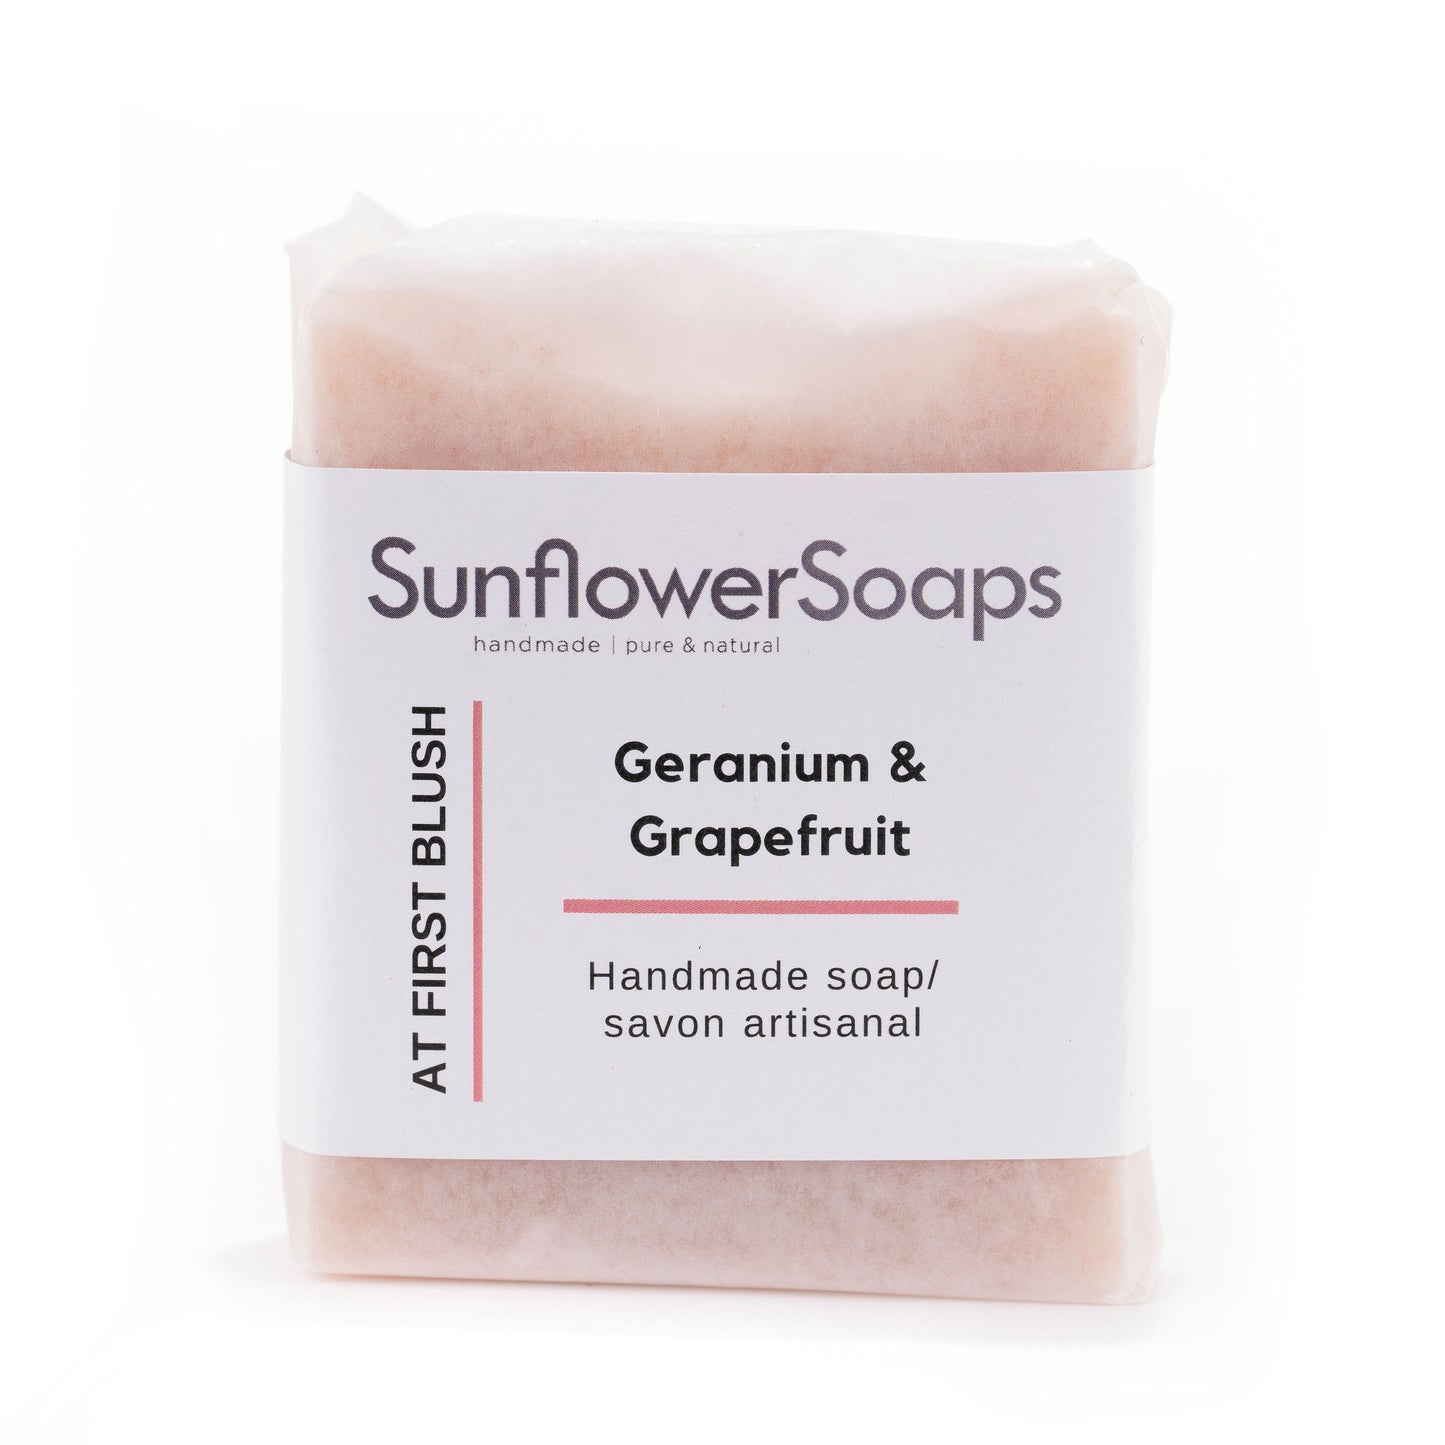 At First Blush—Geranium & Grapefruit